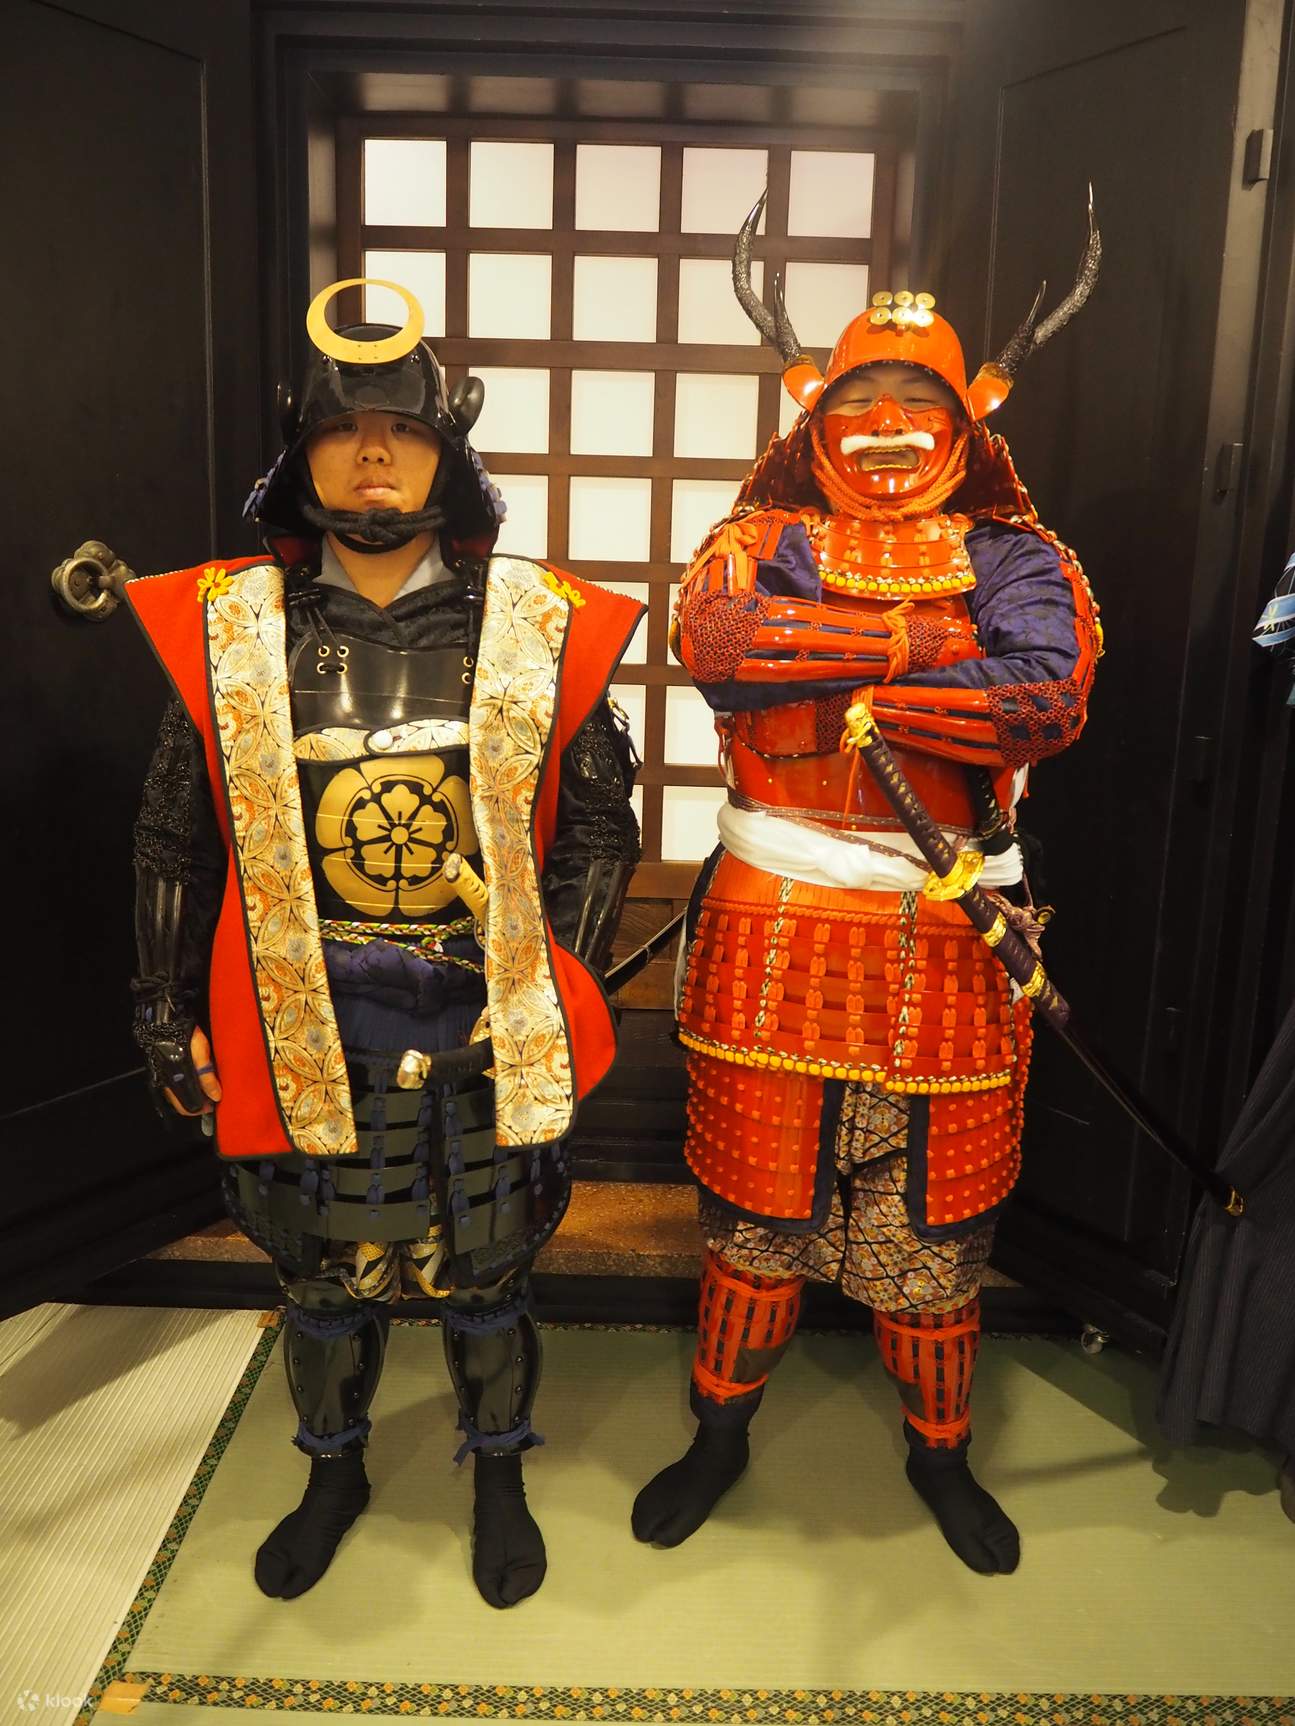 Tokyo Samurai Armor Experience